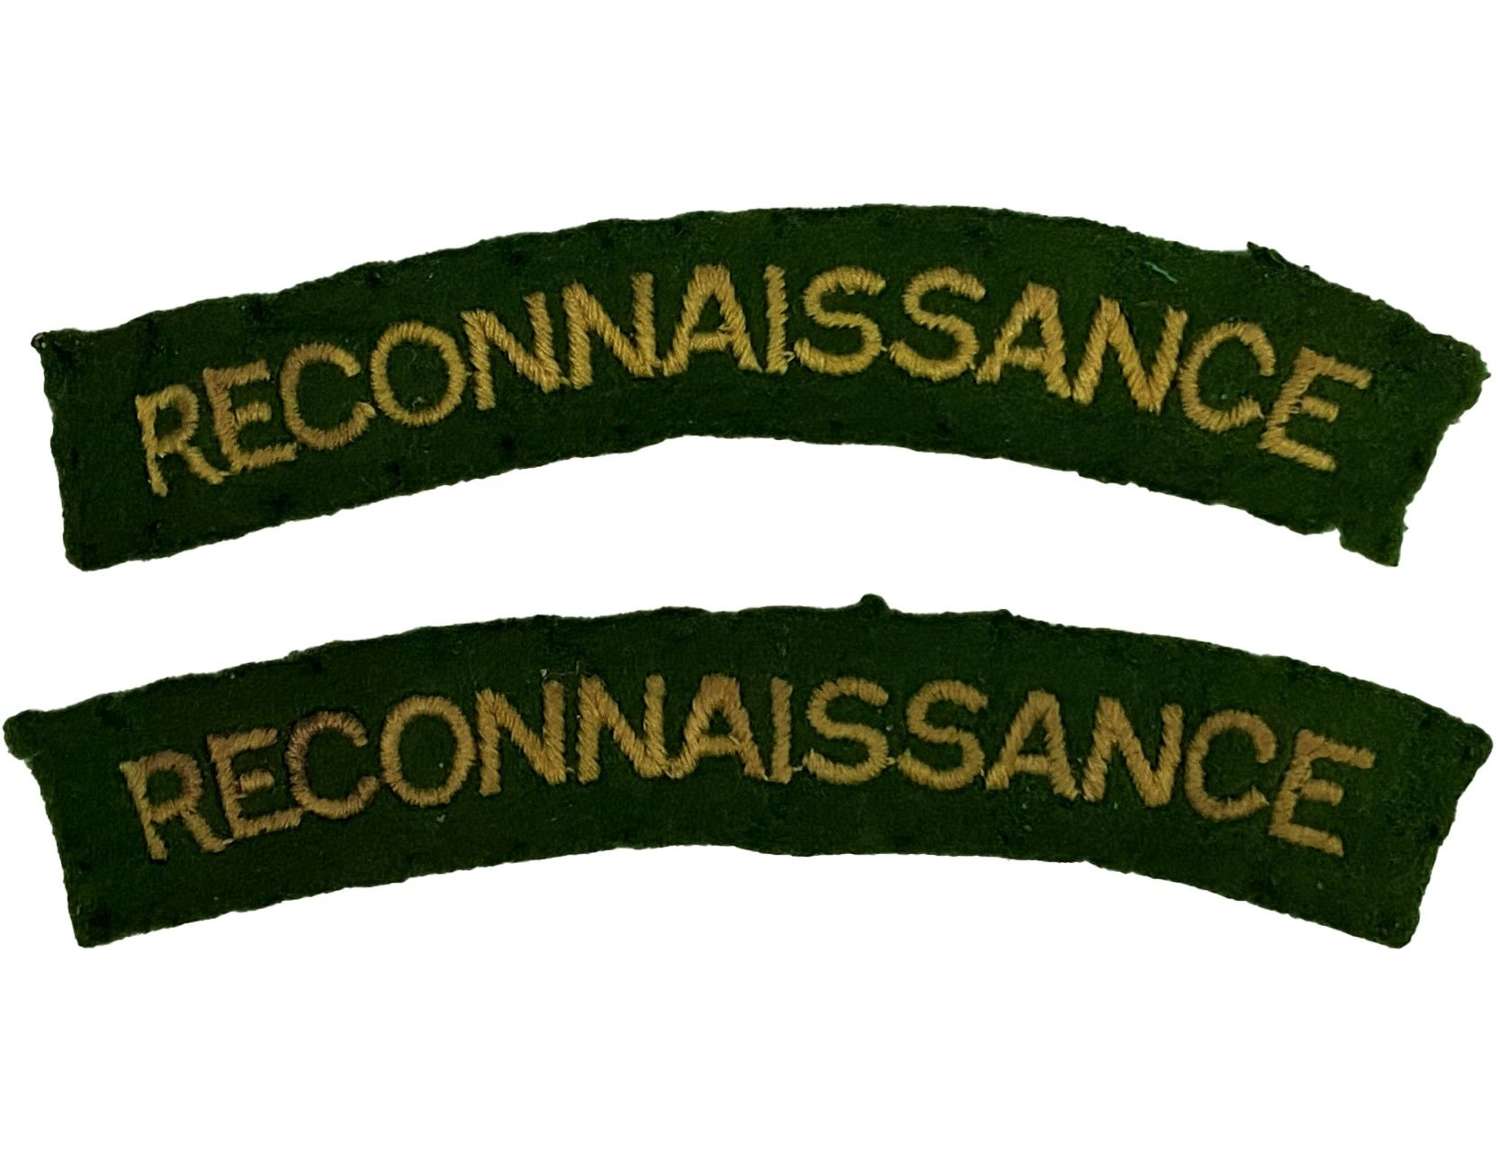 Original WW2 Reconnaissance Corps Shoulder Titles